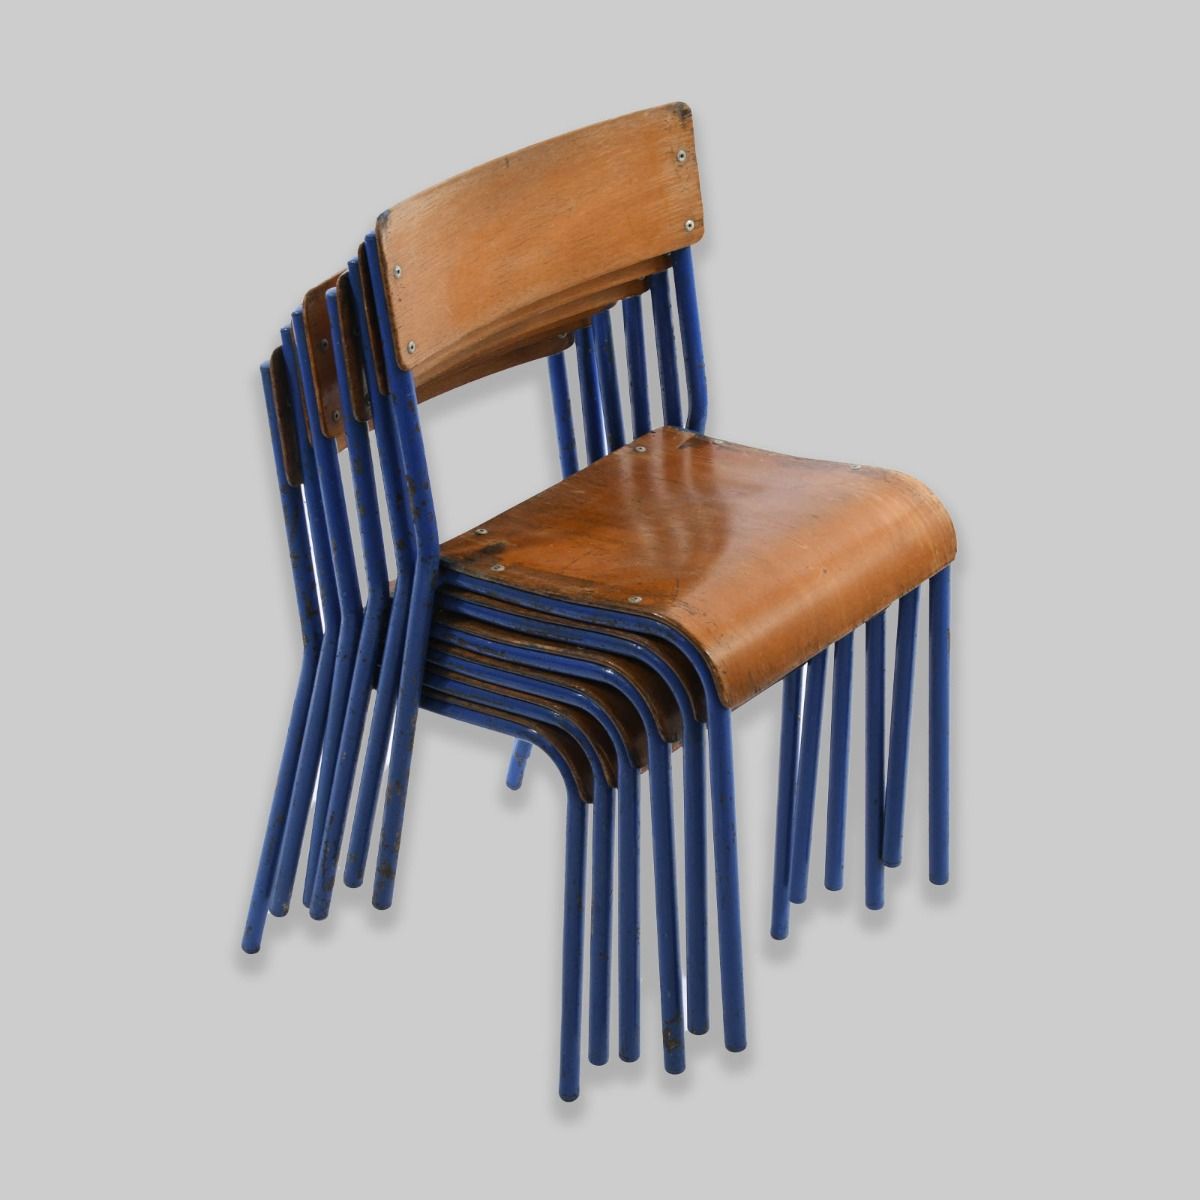 1960s Stackable Wooden Children's School Chairs